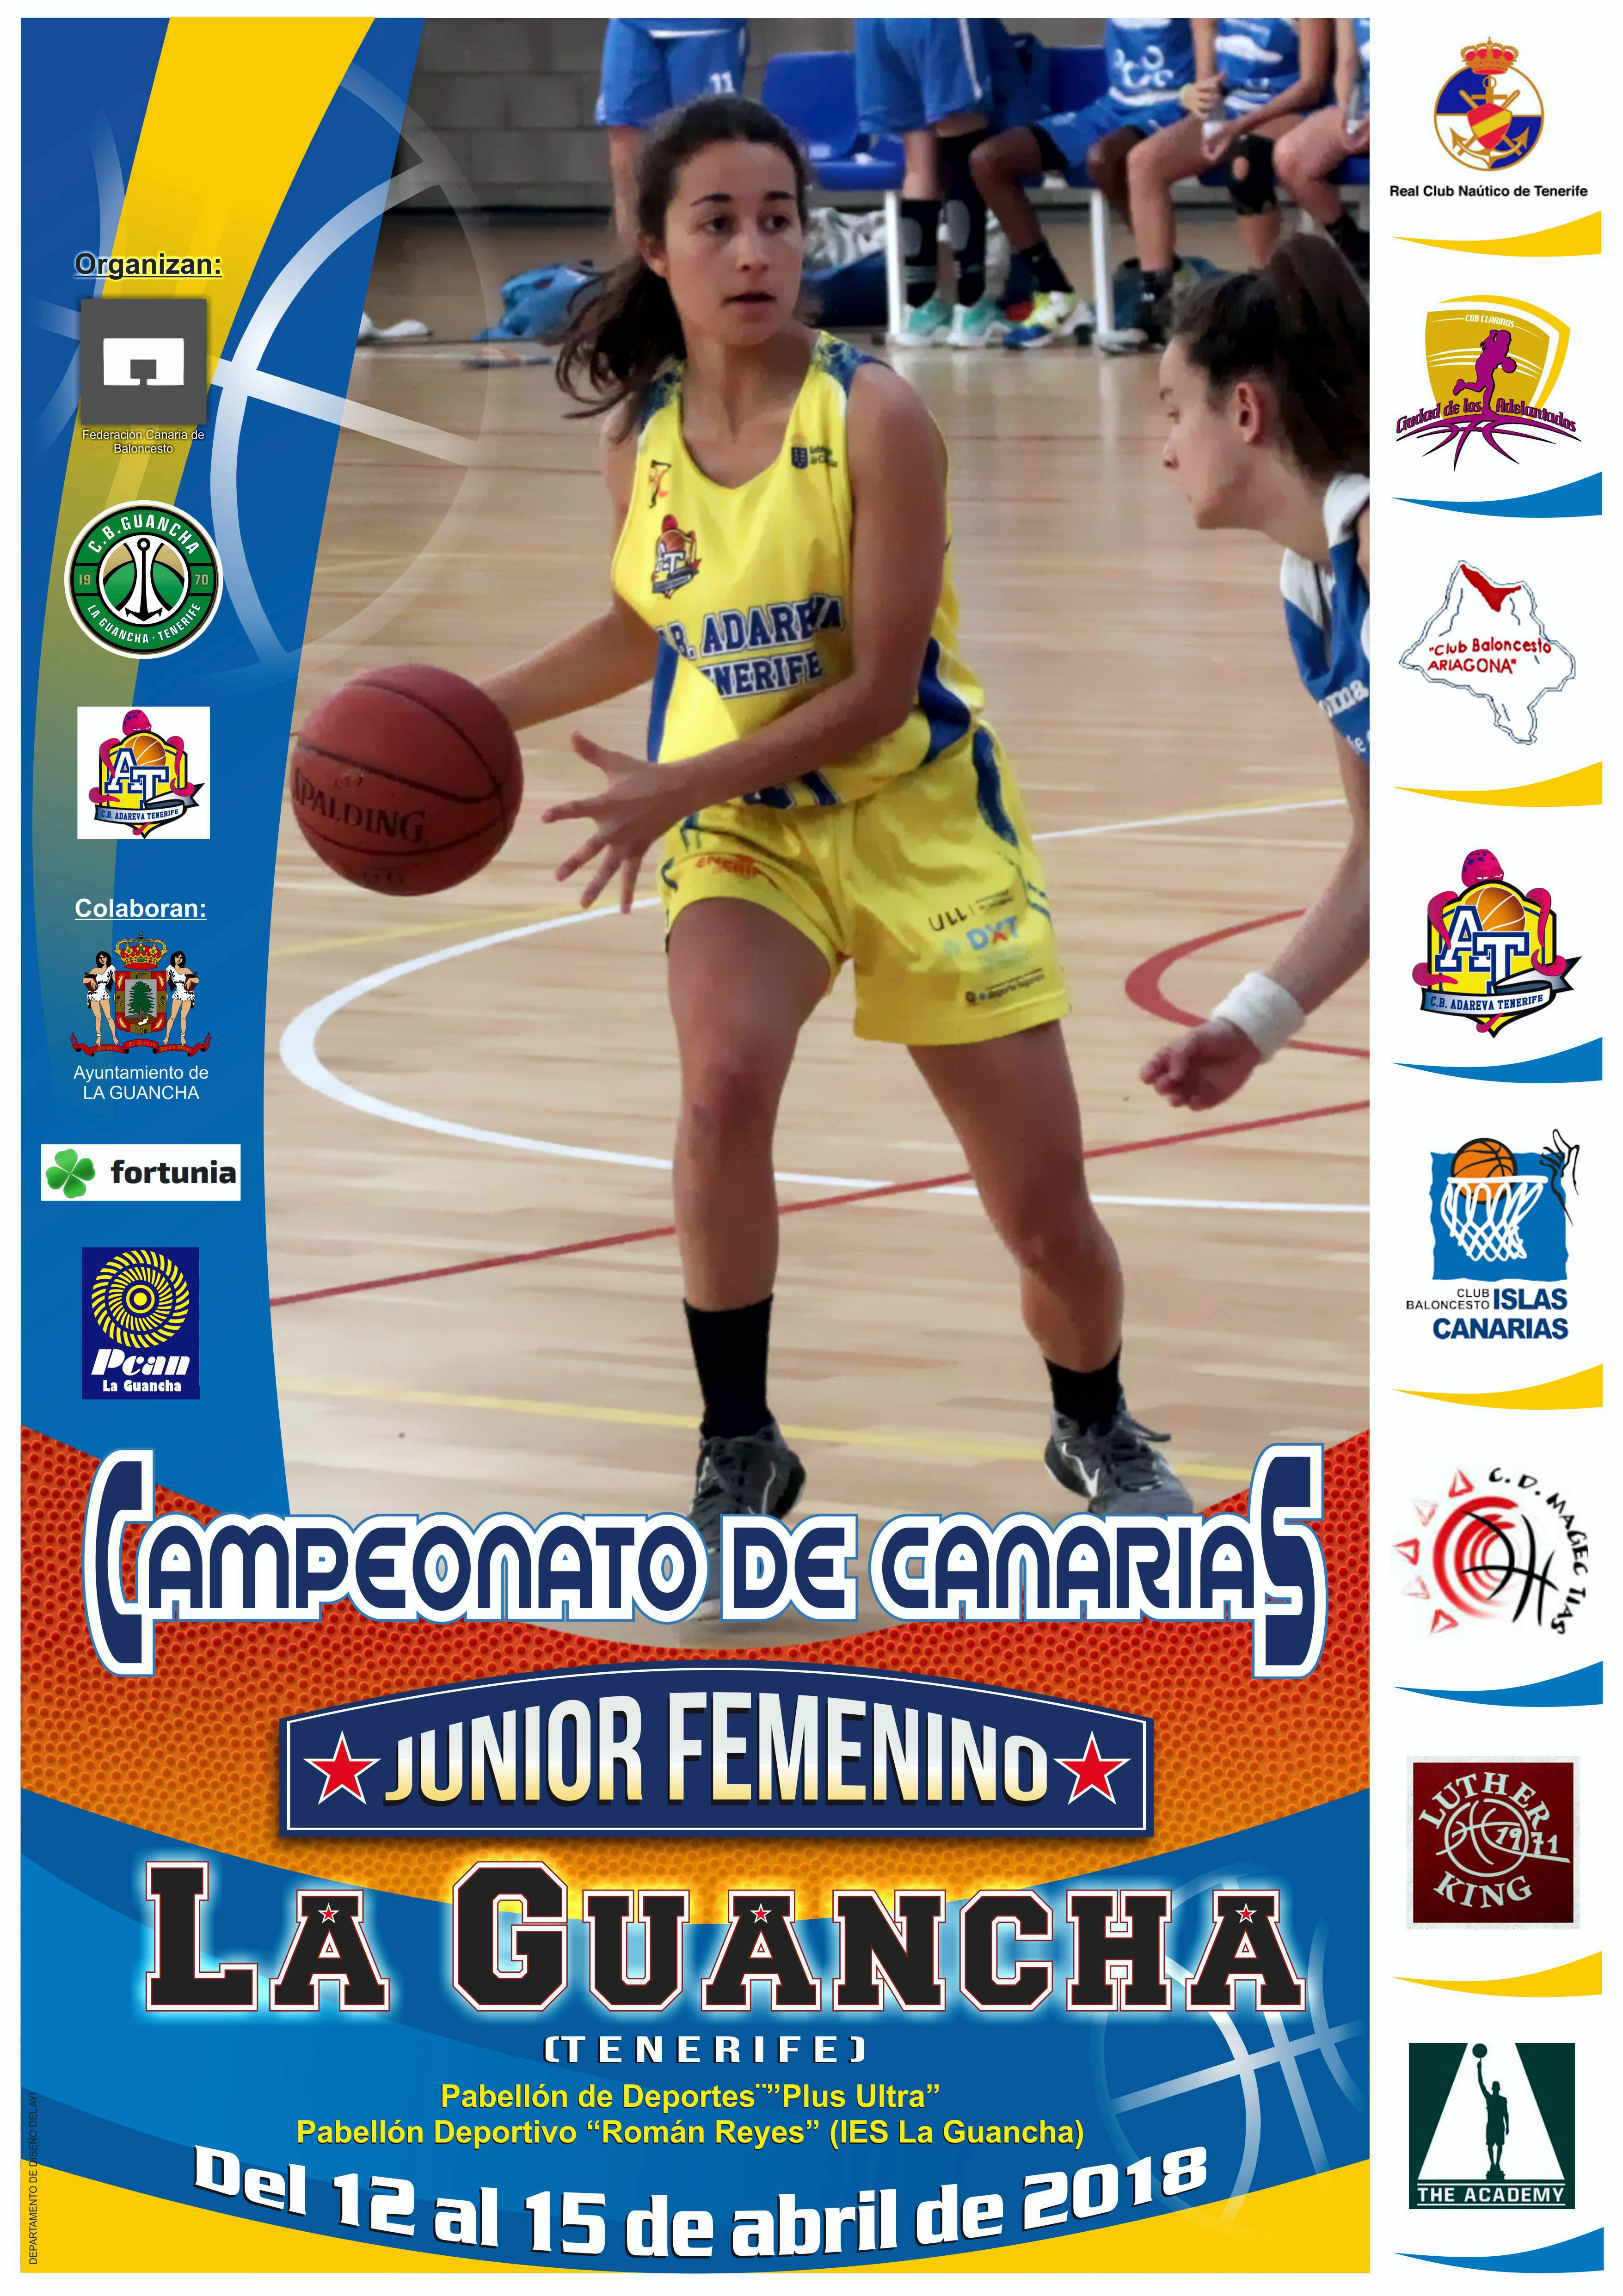 El próximo mes de abril, La Guancha acogerá el Campeonato de Canarias junior Femenino de baloncesto